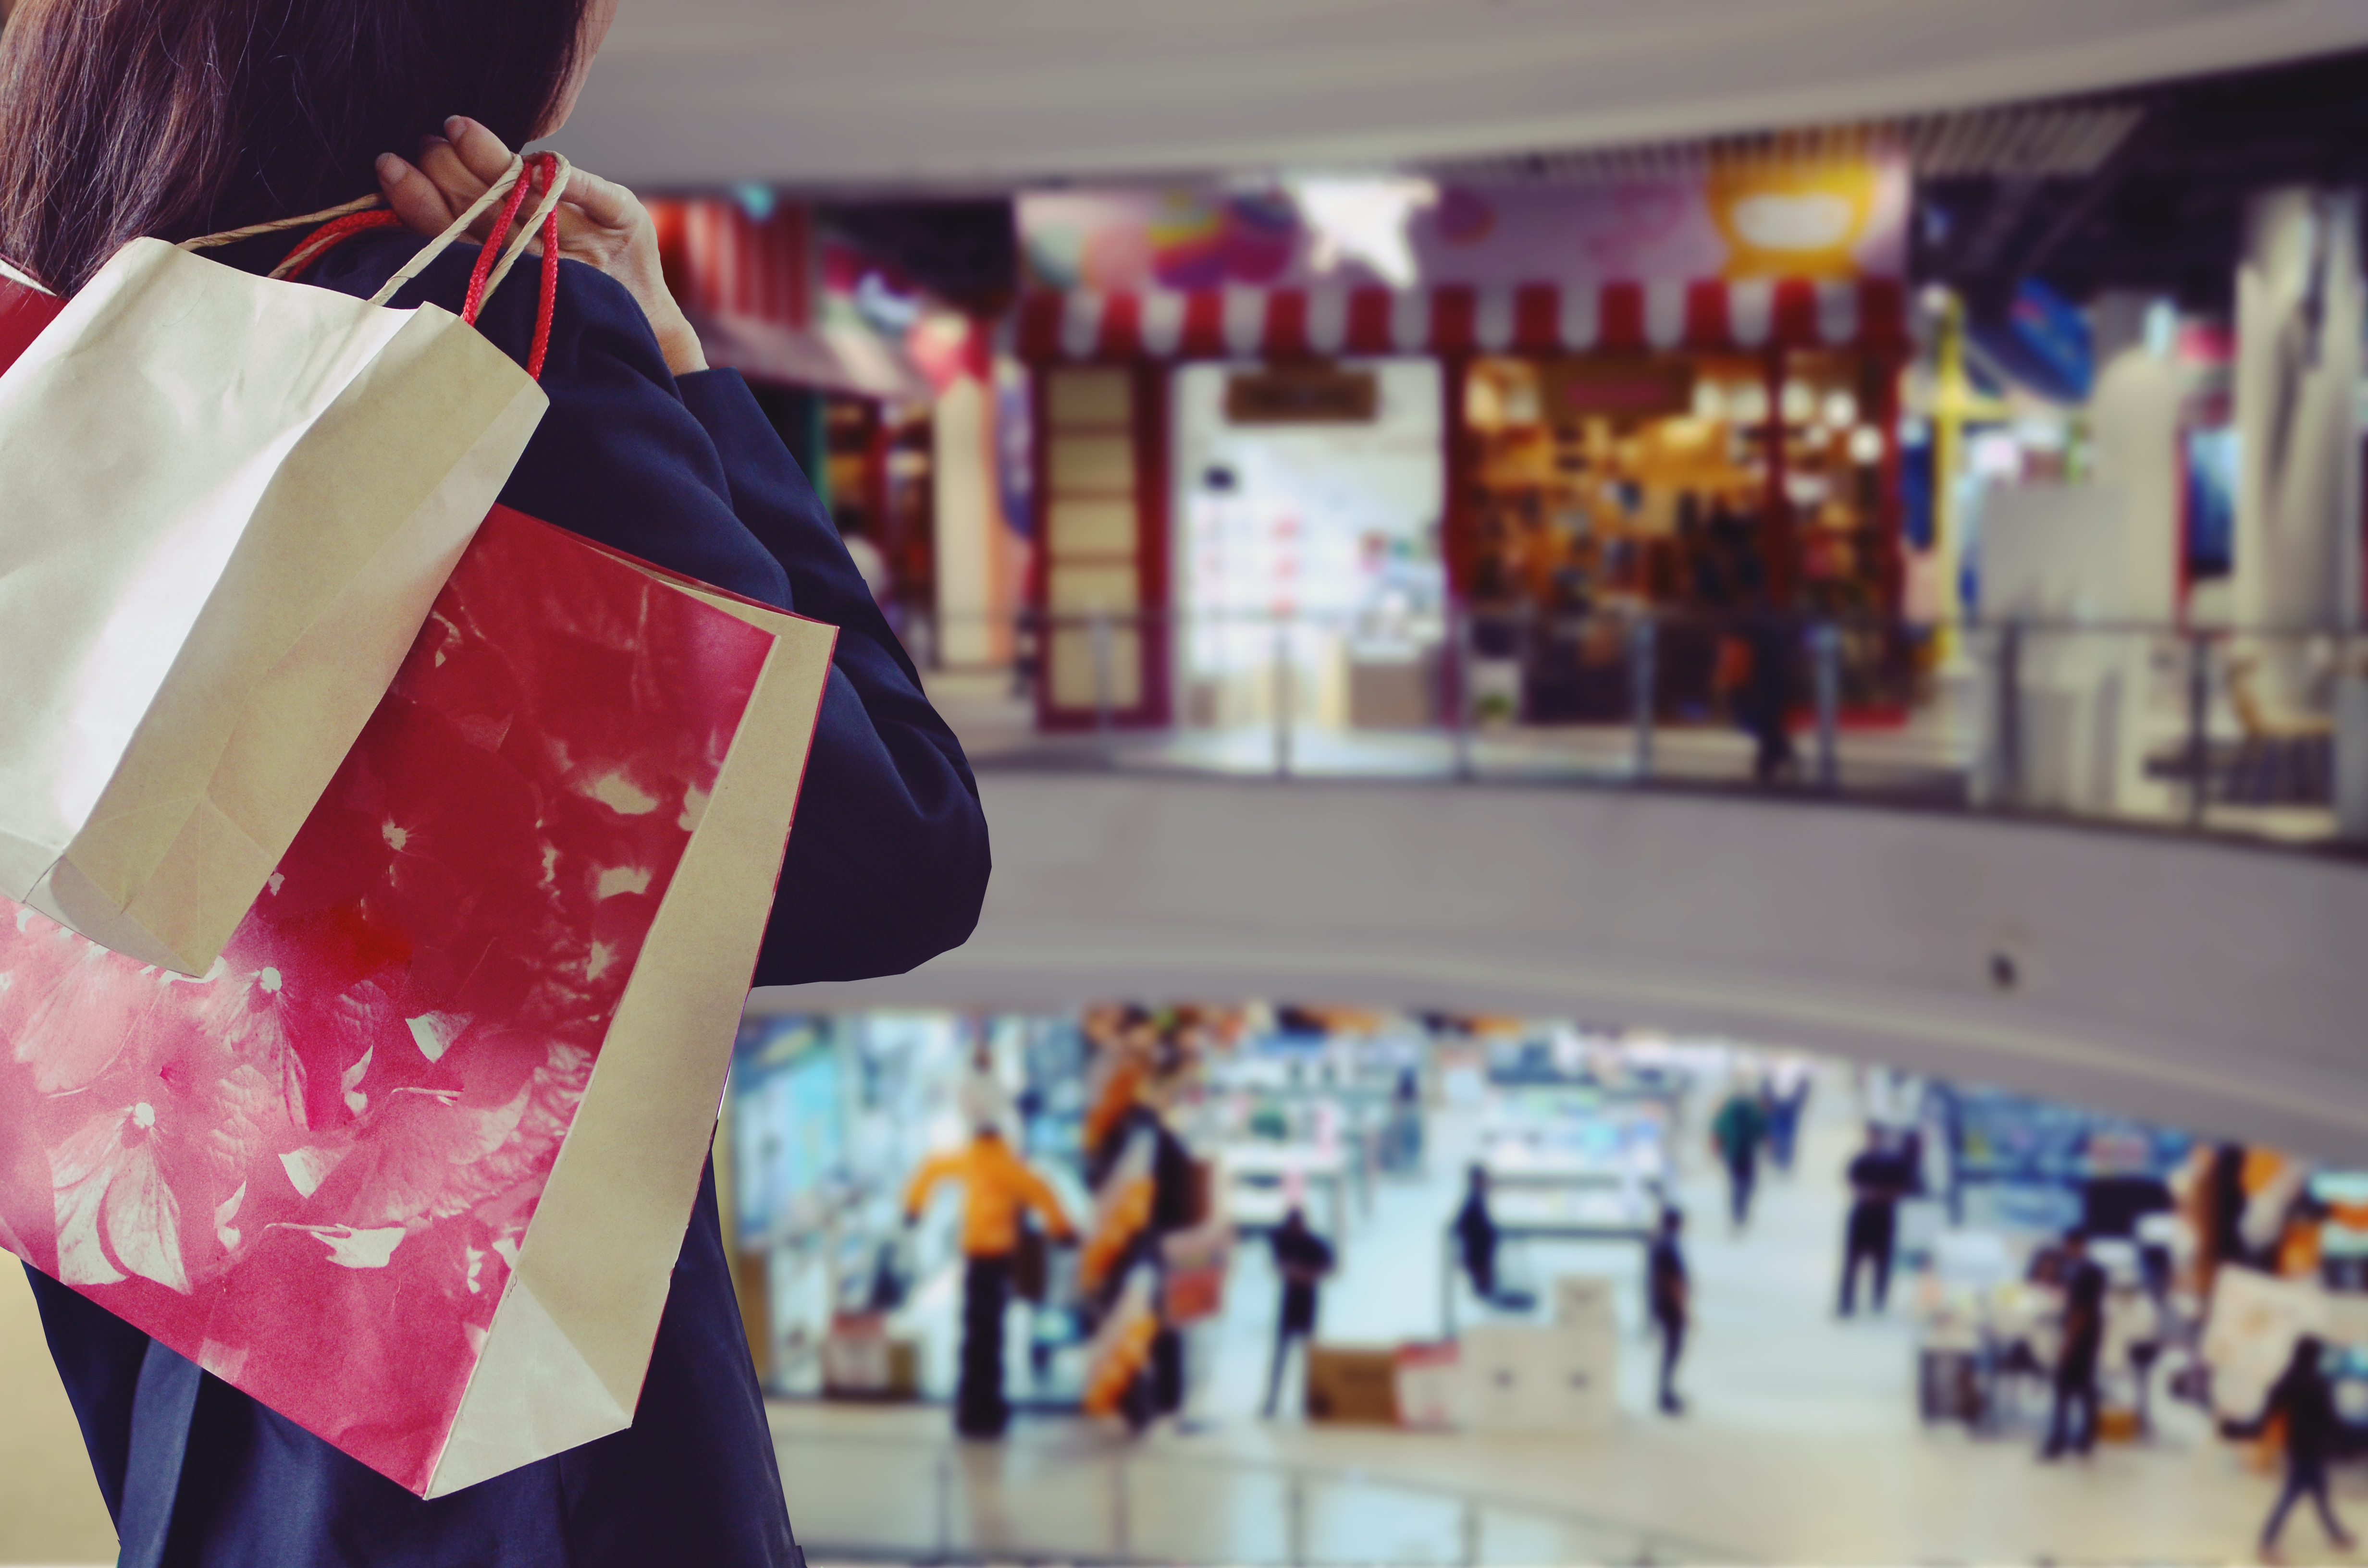 Une personne portant des sacs de cadeaux | Source : Shutterstock